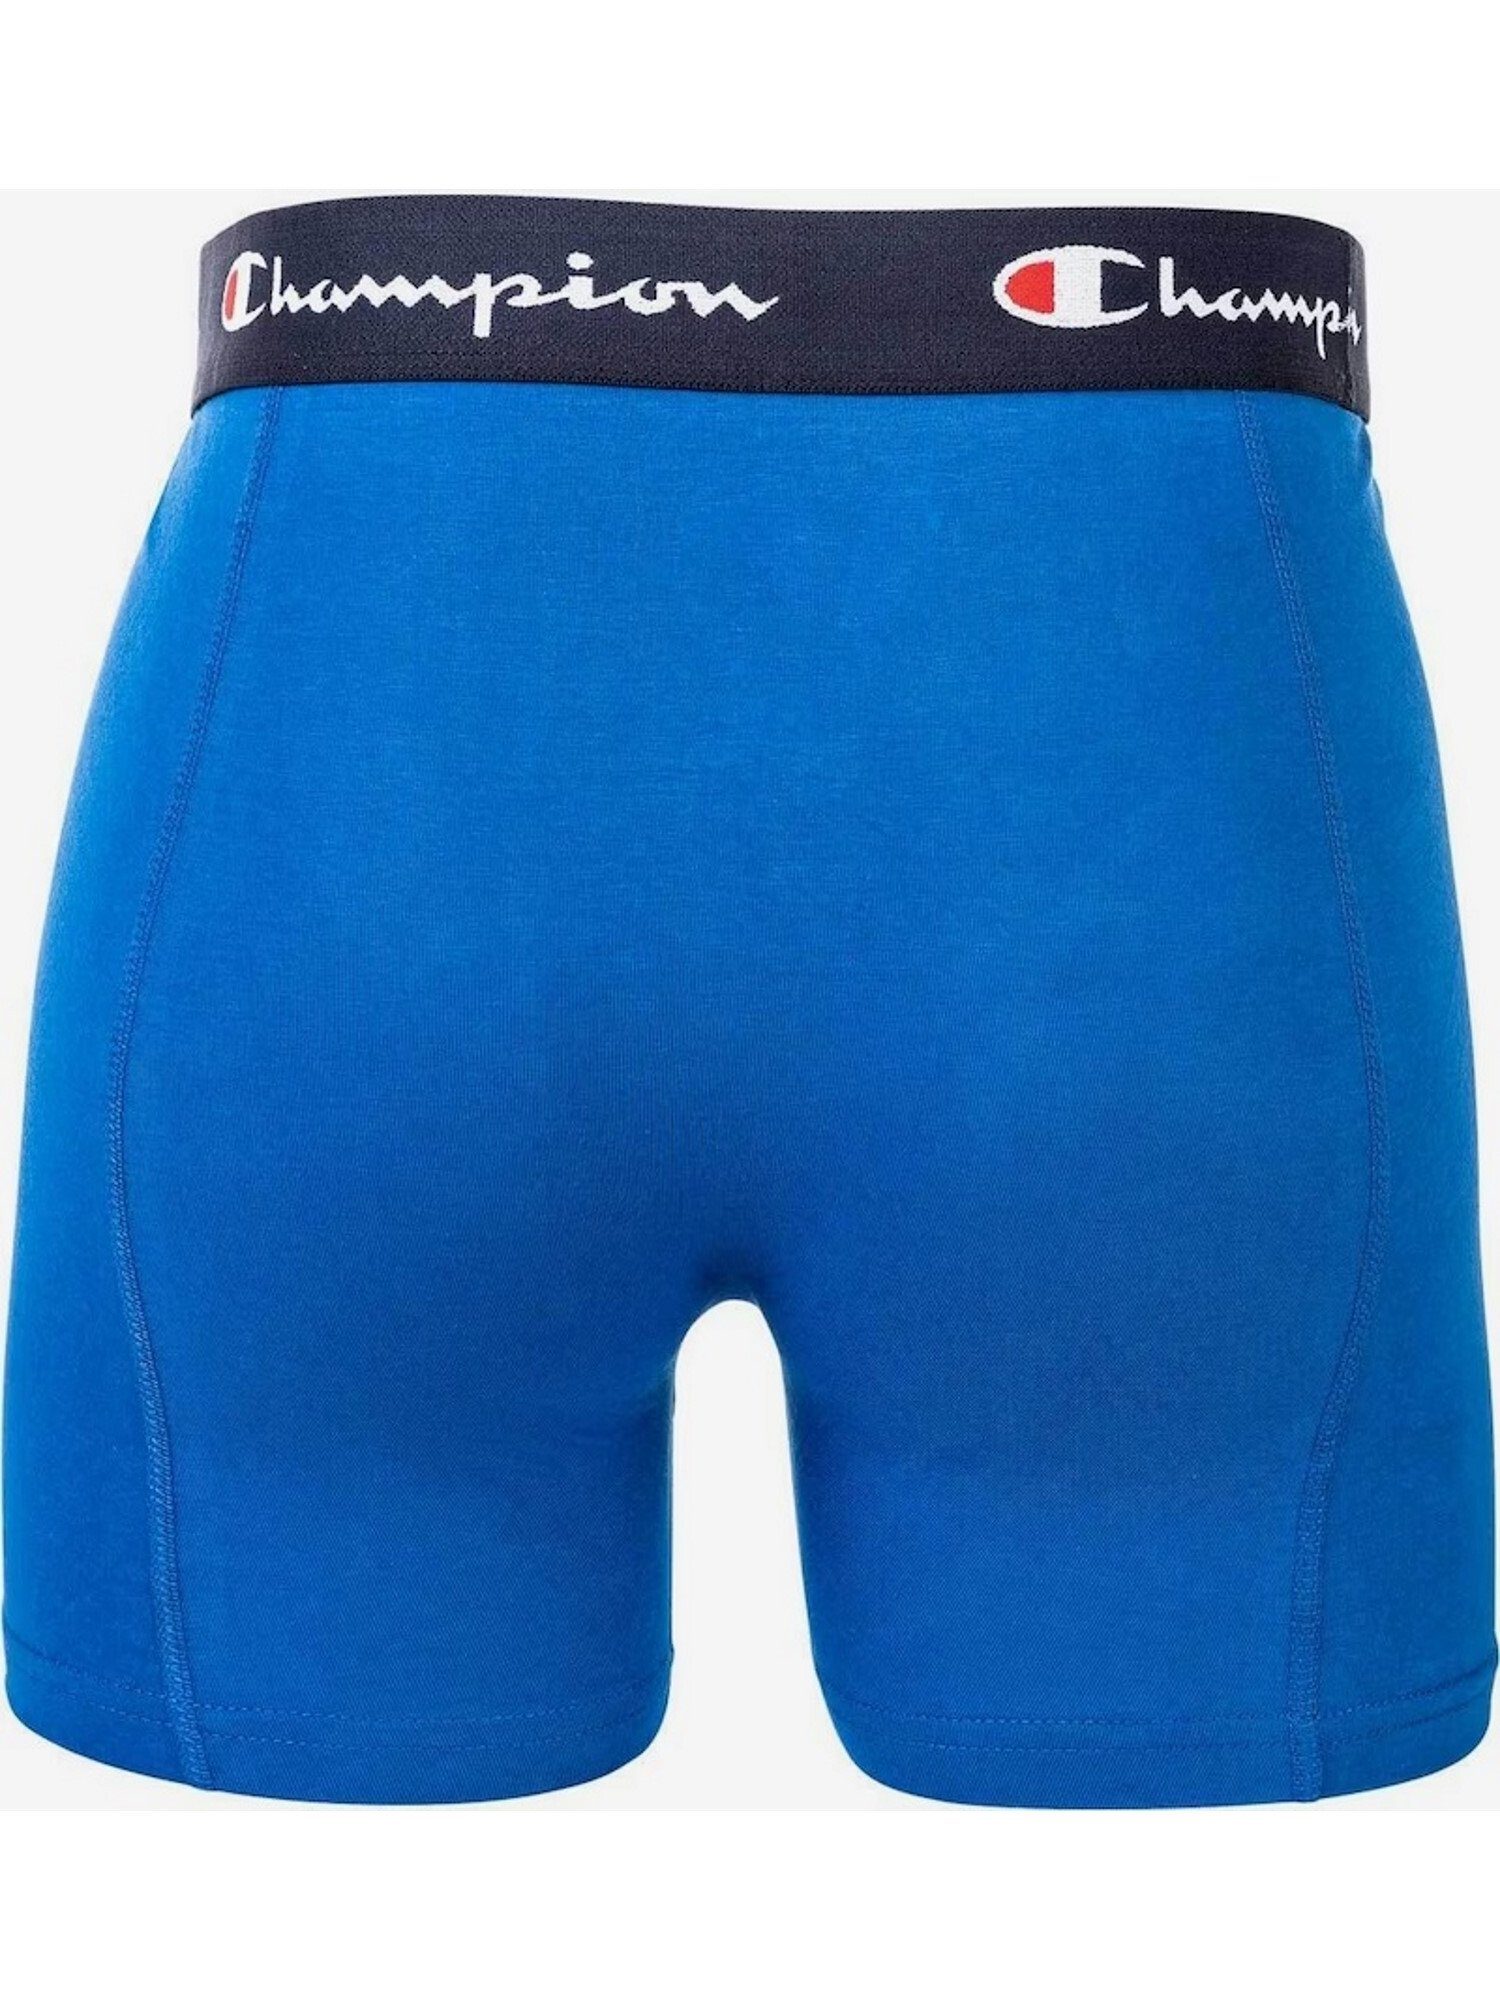 Boxershorts Doppelpack Champion Boxershorts Basic blau Trunks